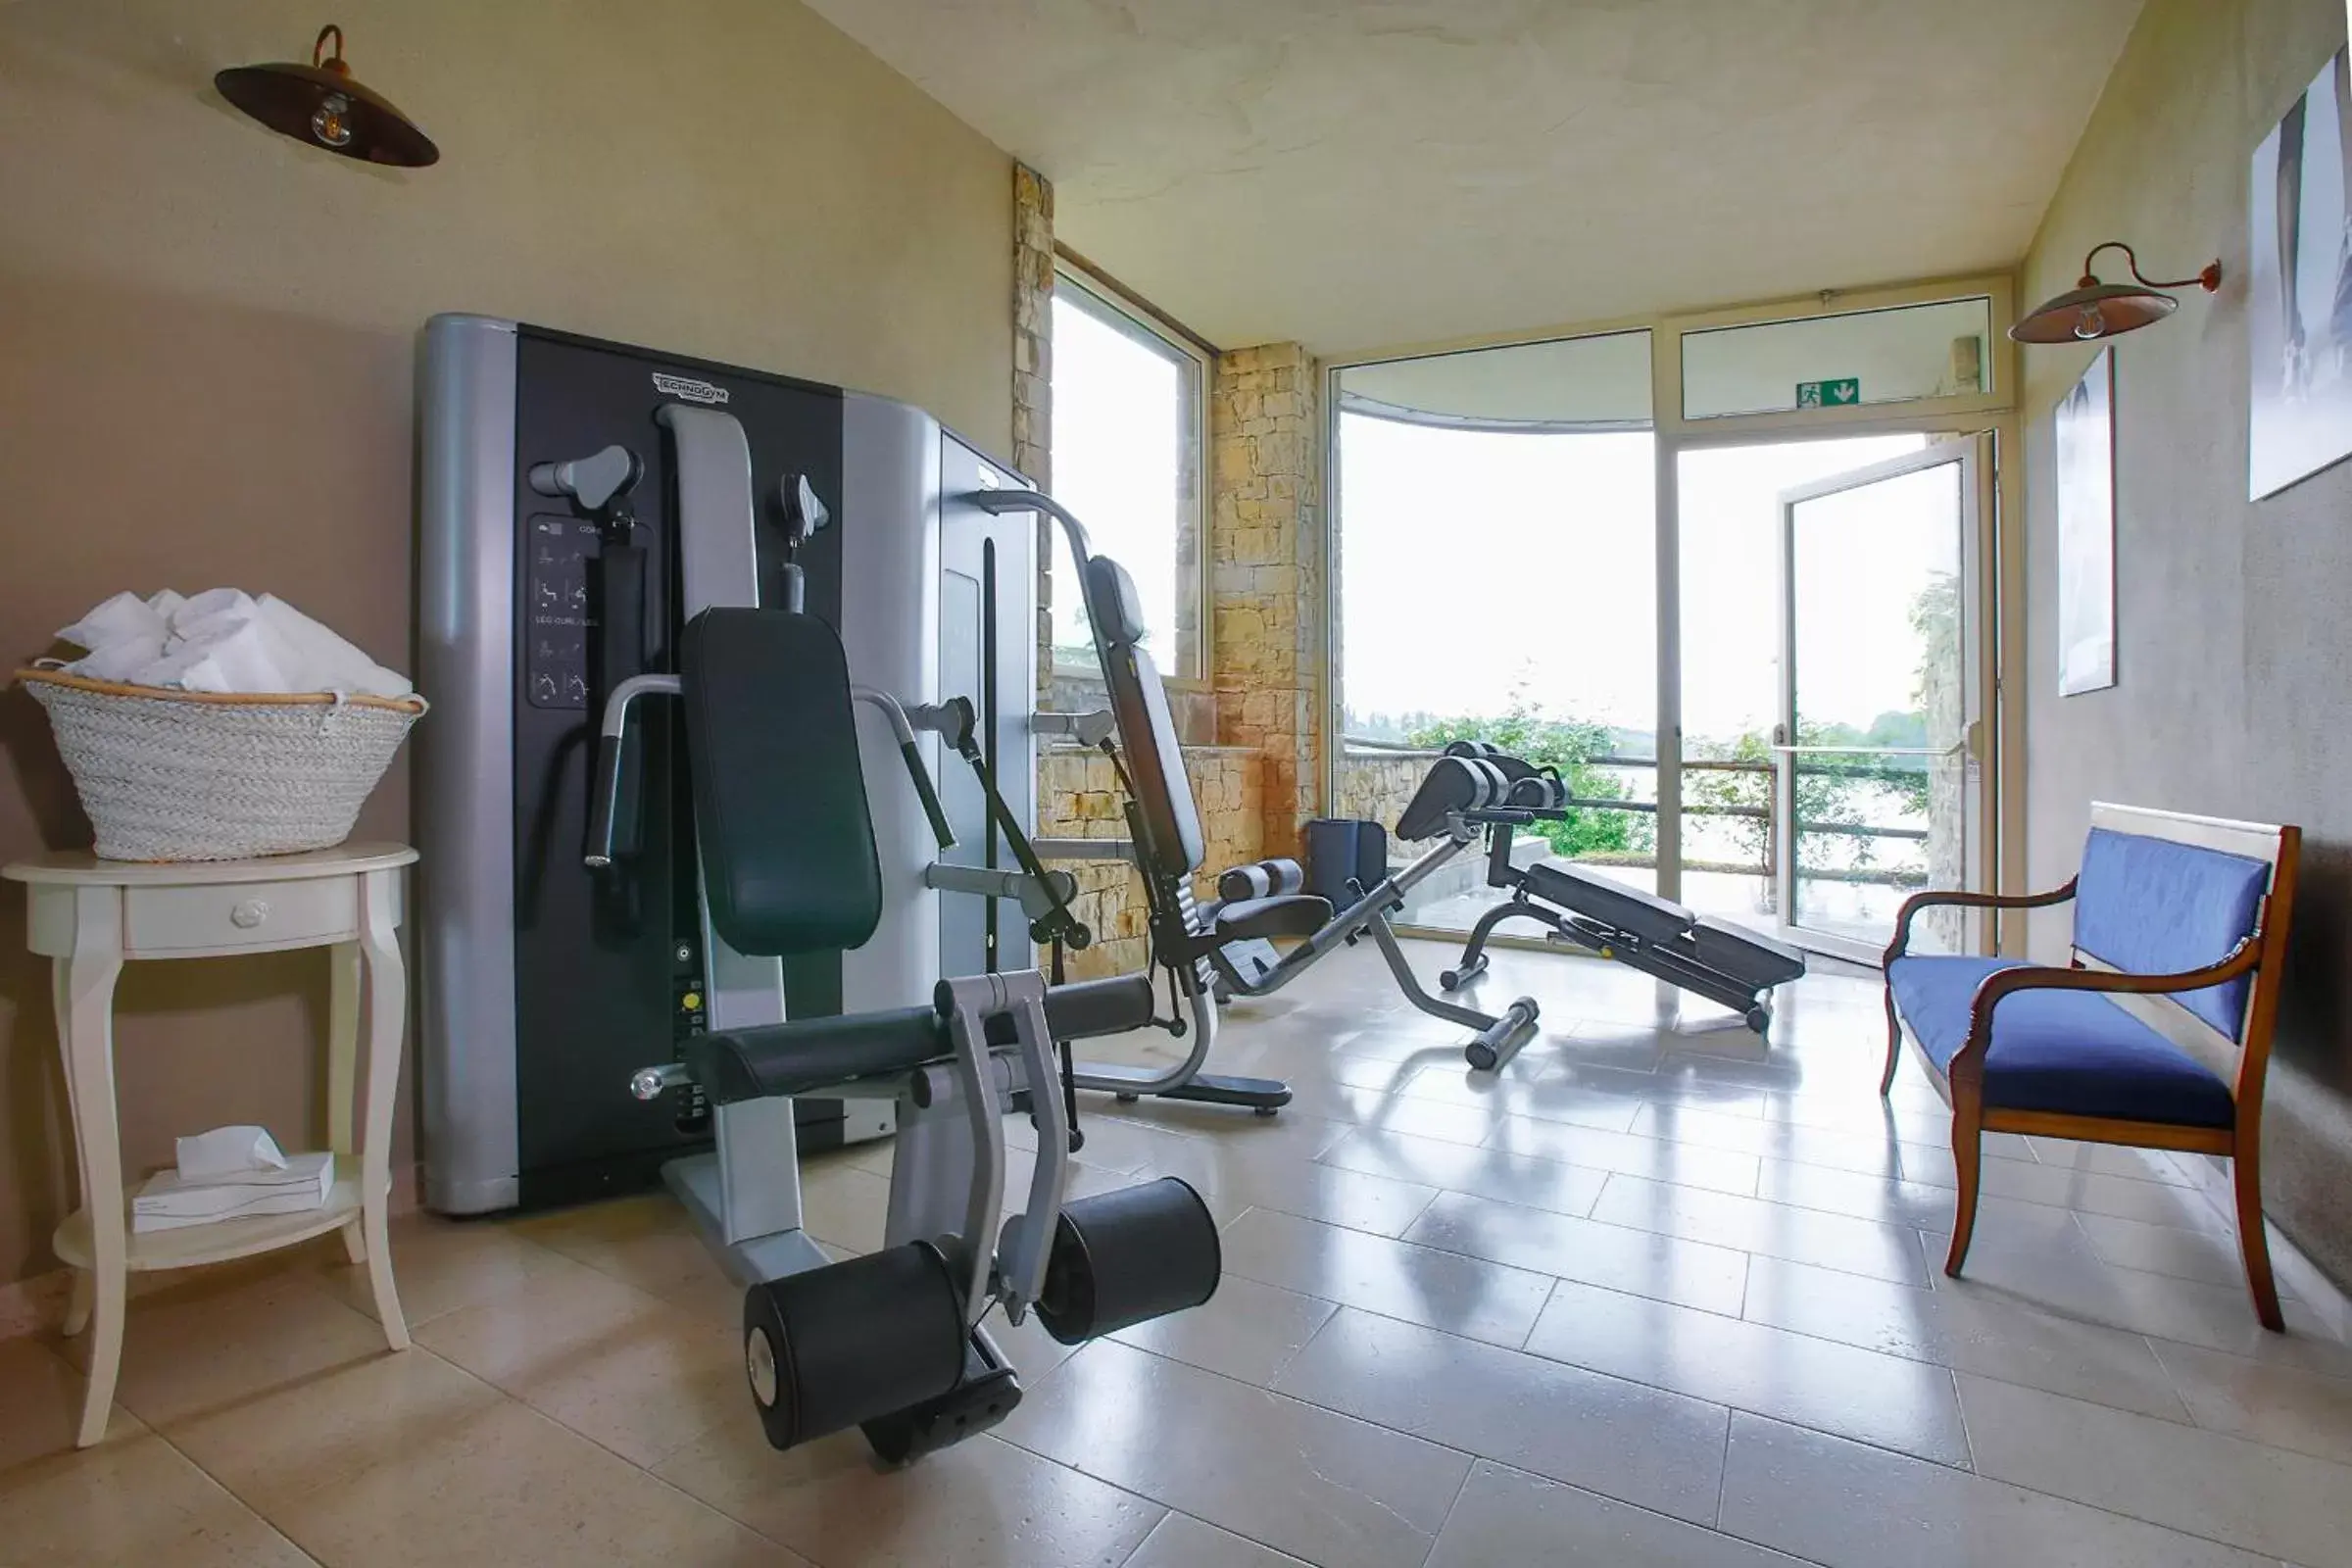 Fitness centre/facilities, Fitness Center/Facilities in Le Ali Del Frassino